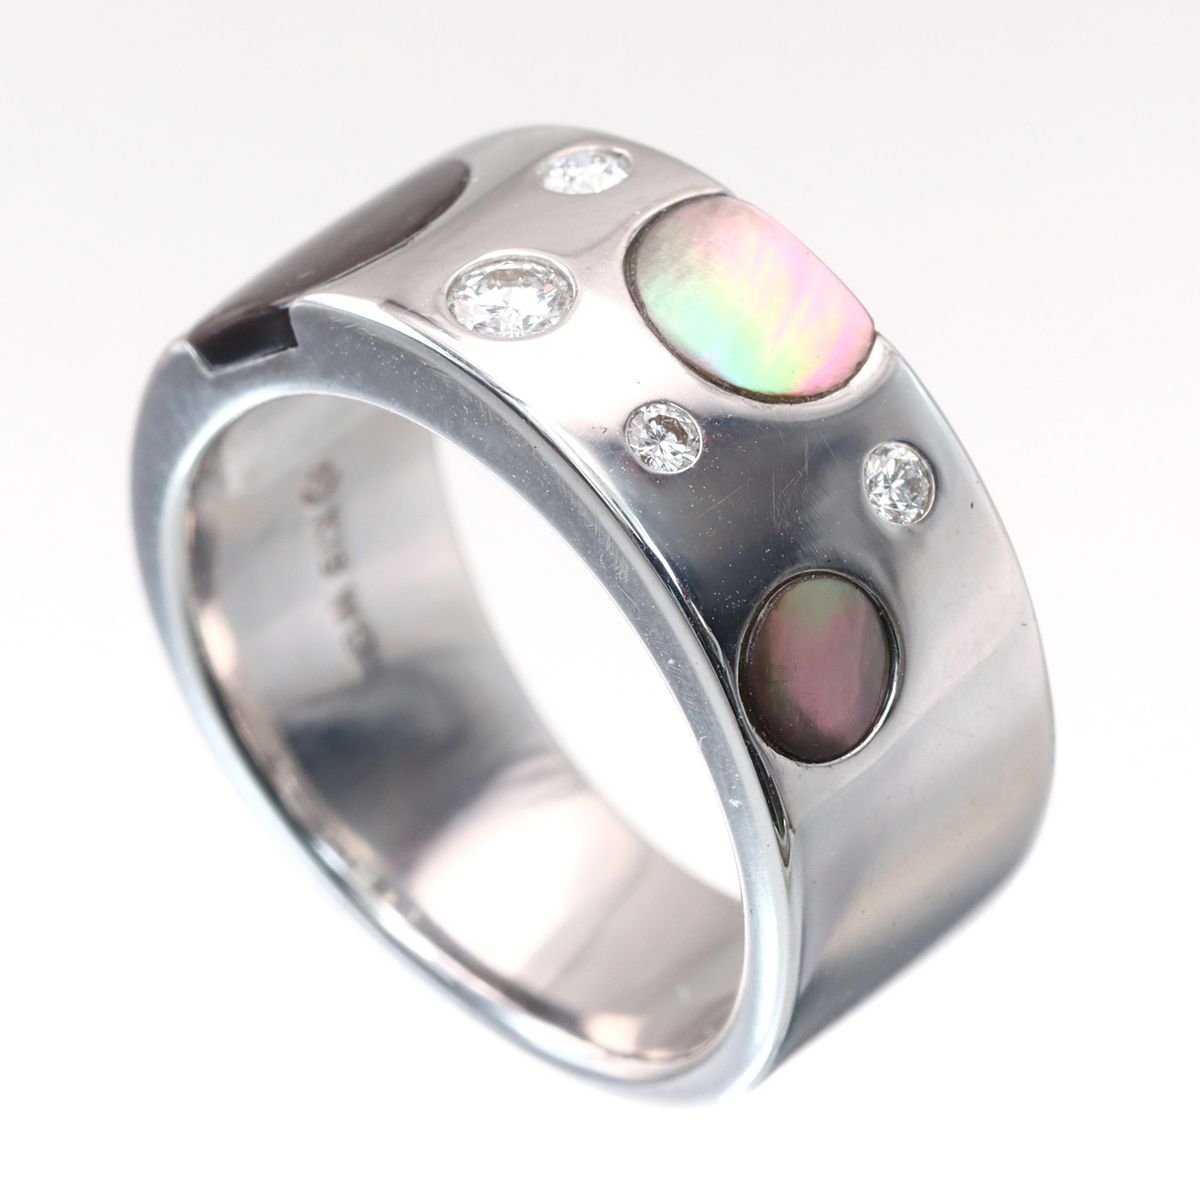 独創的なデザインで際立つ高級感▽田崎真珠 K18WG シェル ダイヤモンド